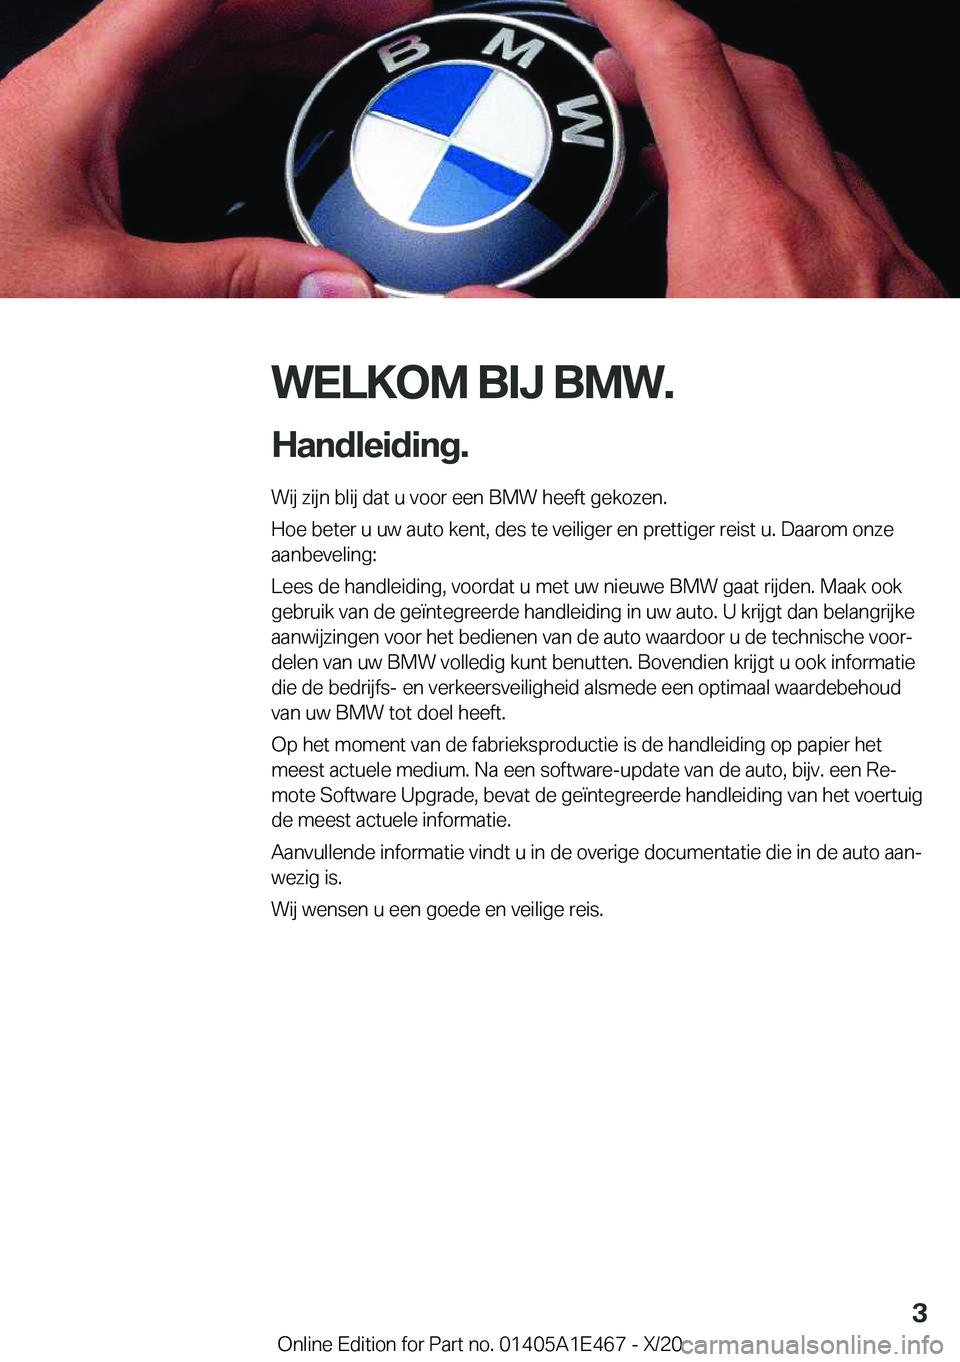 BMW M3 2021  Instructieboekjes (in Dutch) �W�E�L�K�O�M��B�I�J��B�M�W�.
�H�a�n�d�l�e�i�d�i�n�g�. �W�i�j��z�i�j�n��b�l�i�j��d�a�t��u��v�o�o�r��e�e�n��B�M�W��h�e�e�f�t��g�e�k�o�z�e�n�.
�H�o�e��b�e�t�e�r��u��u�w��a�u�t�o��k�e�n�t�